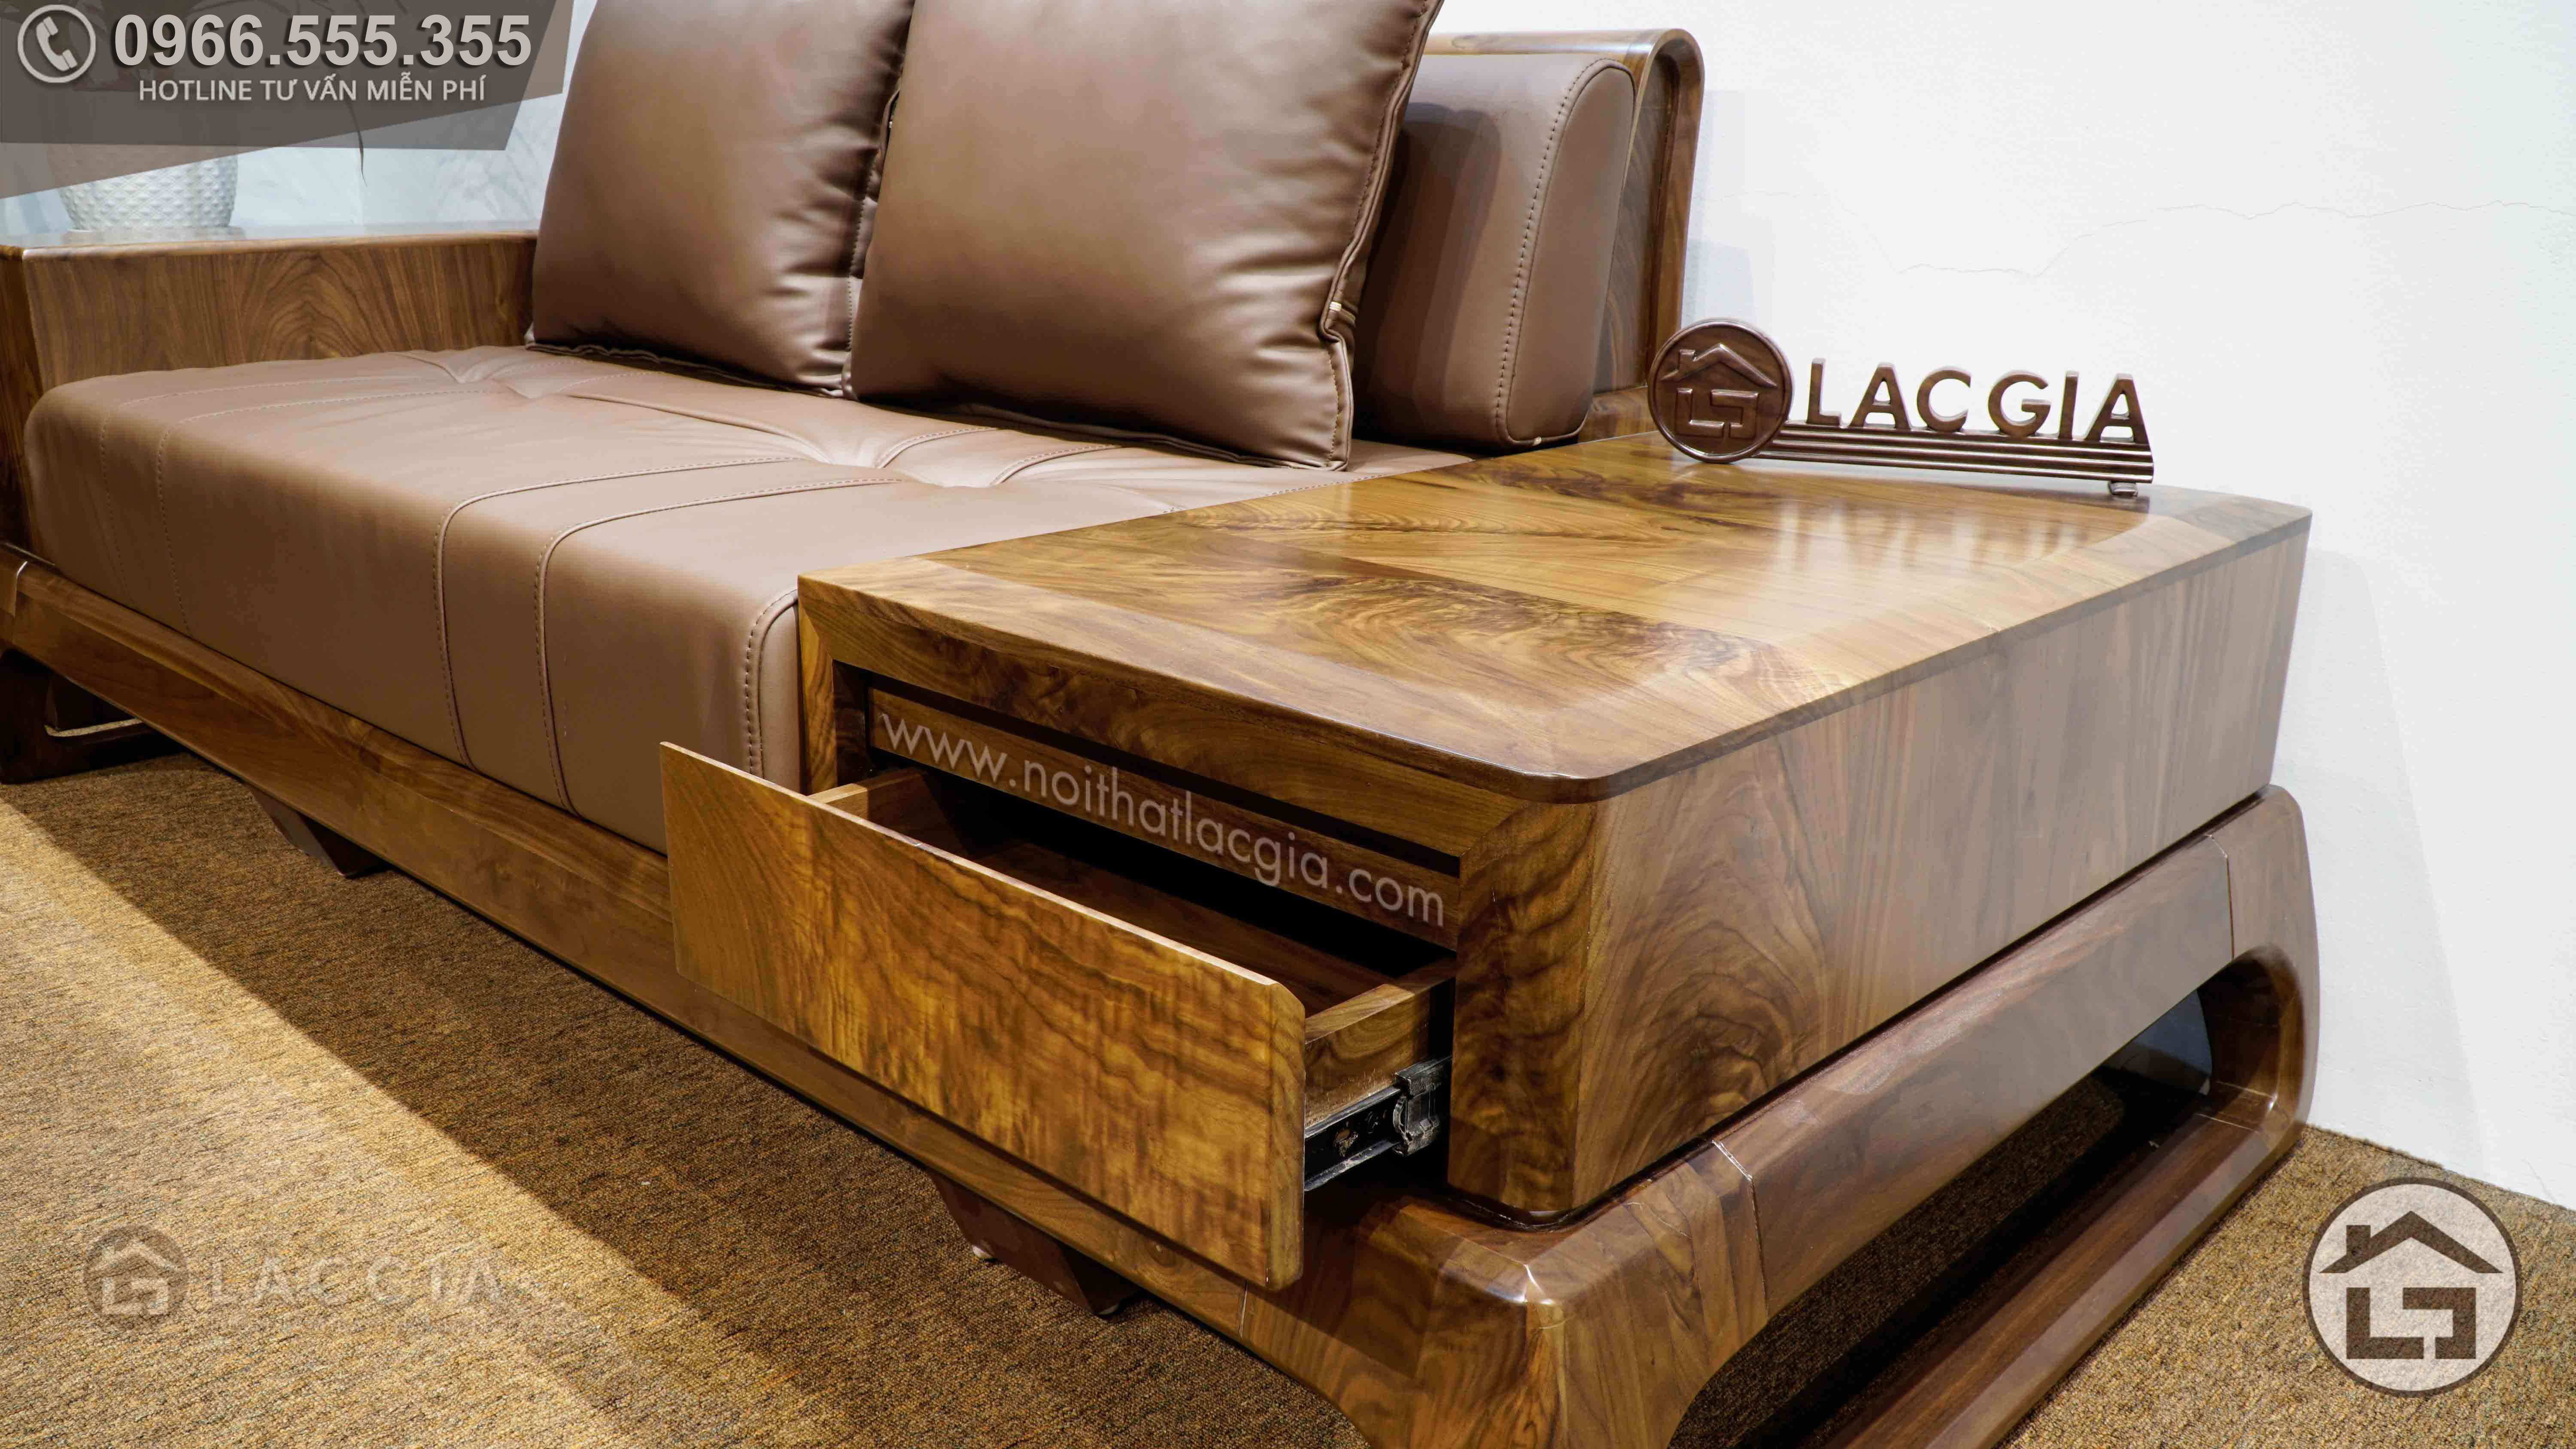 Bạn đang tìm kiếm thông tin về chiếc sofa gỗ chữ L hoàn hảo cho không gian phòng khách của mình? Hãy đến với chúng tôi để tìm hiểu thêm về những kiến thức về sản phẩm này. Từ chất liệu gỗ, kiểu dáng, đến các bước tỉ mẩn để tạo ra sản phẩm hoàn thiện, tất cả đều sẽ được cung cấp cho bạn một cách chi tiết và đầy đủ nhất. Hãy tìm hiểu mọi thứ về sofa gỗ chữ L để có thể chọn lựa được sản phẩm tốt nhất cho gia đình của mình.